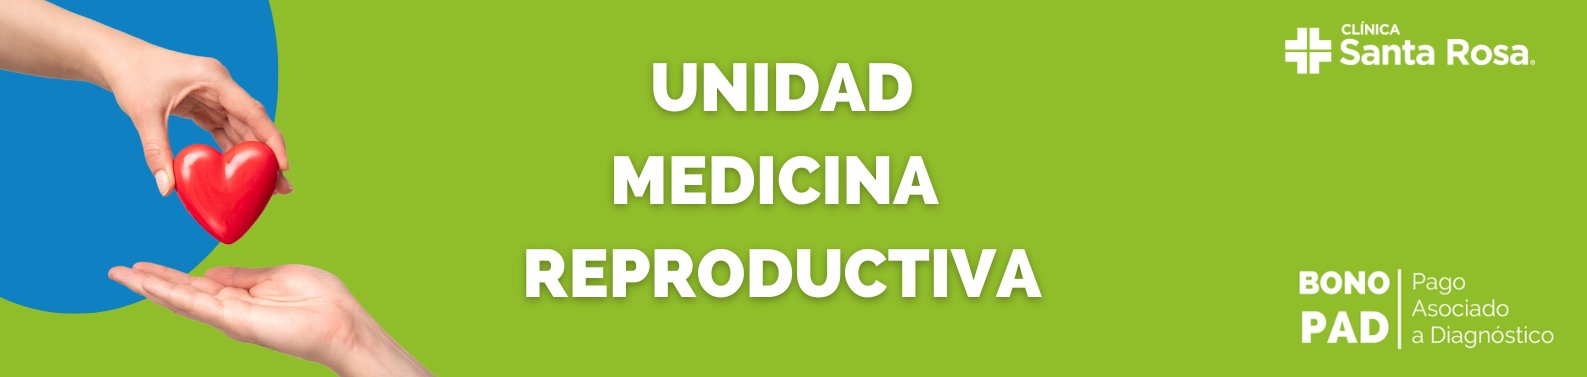 Unidad Medicina Reproductiva (1140 × 356 px) (1587 × 377 px)